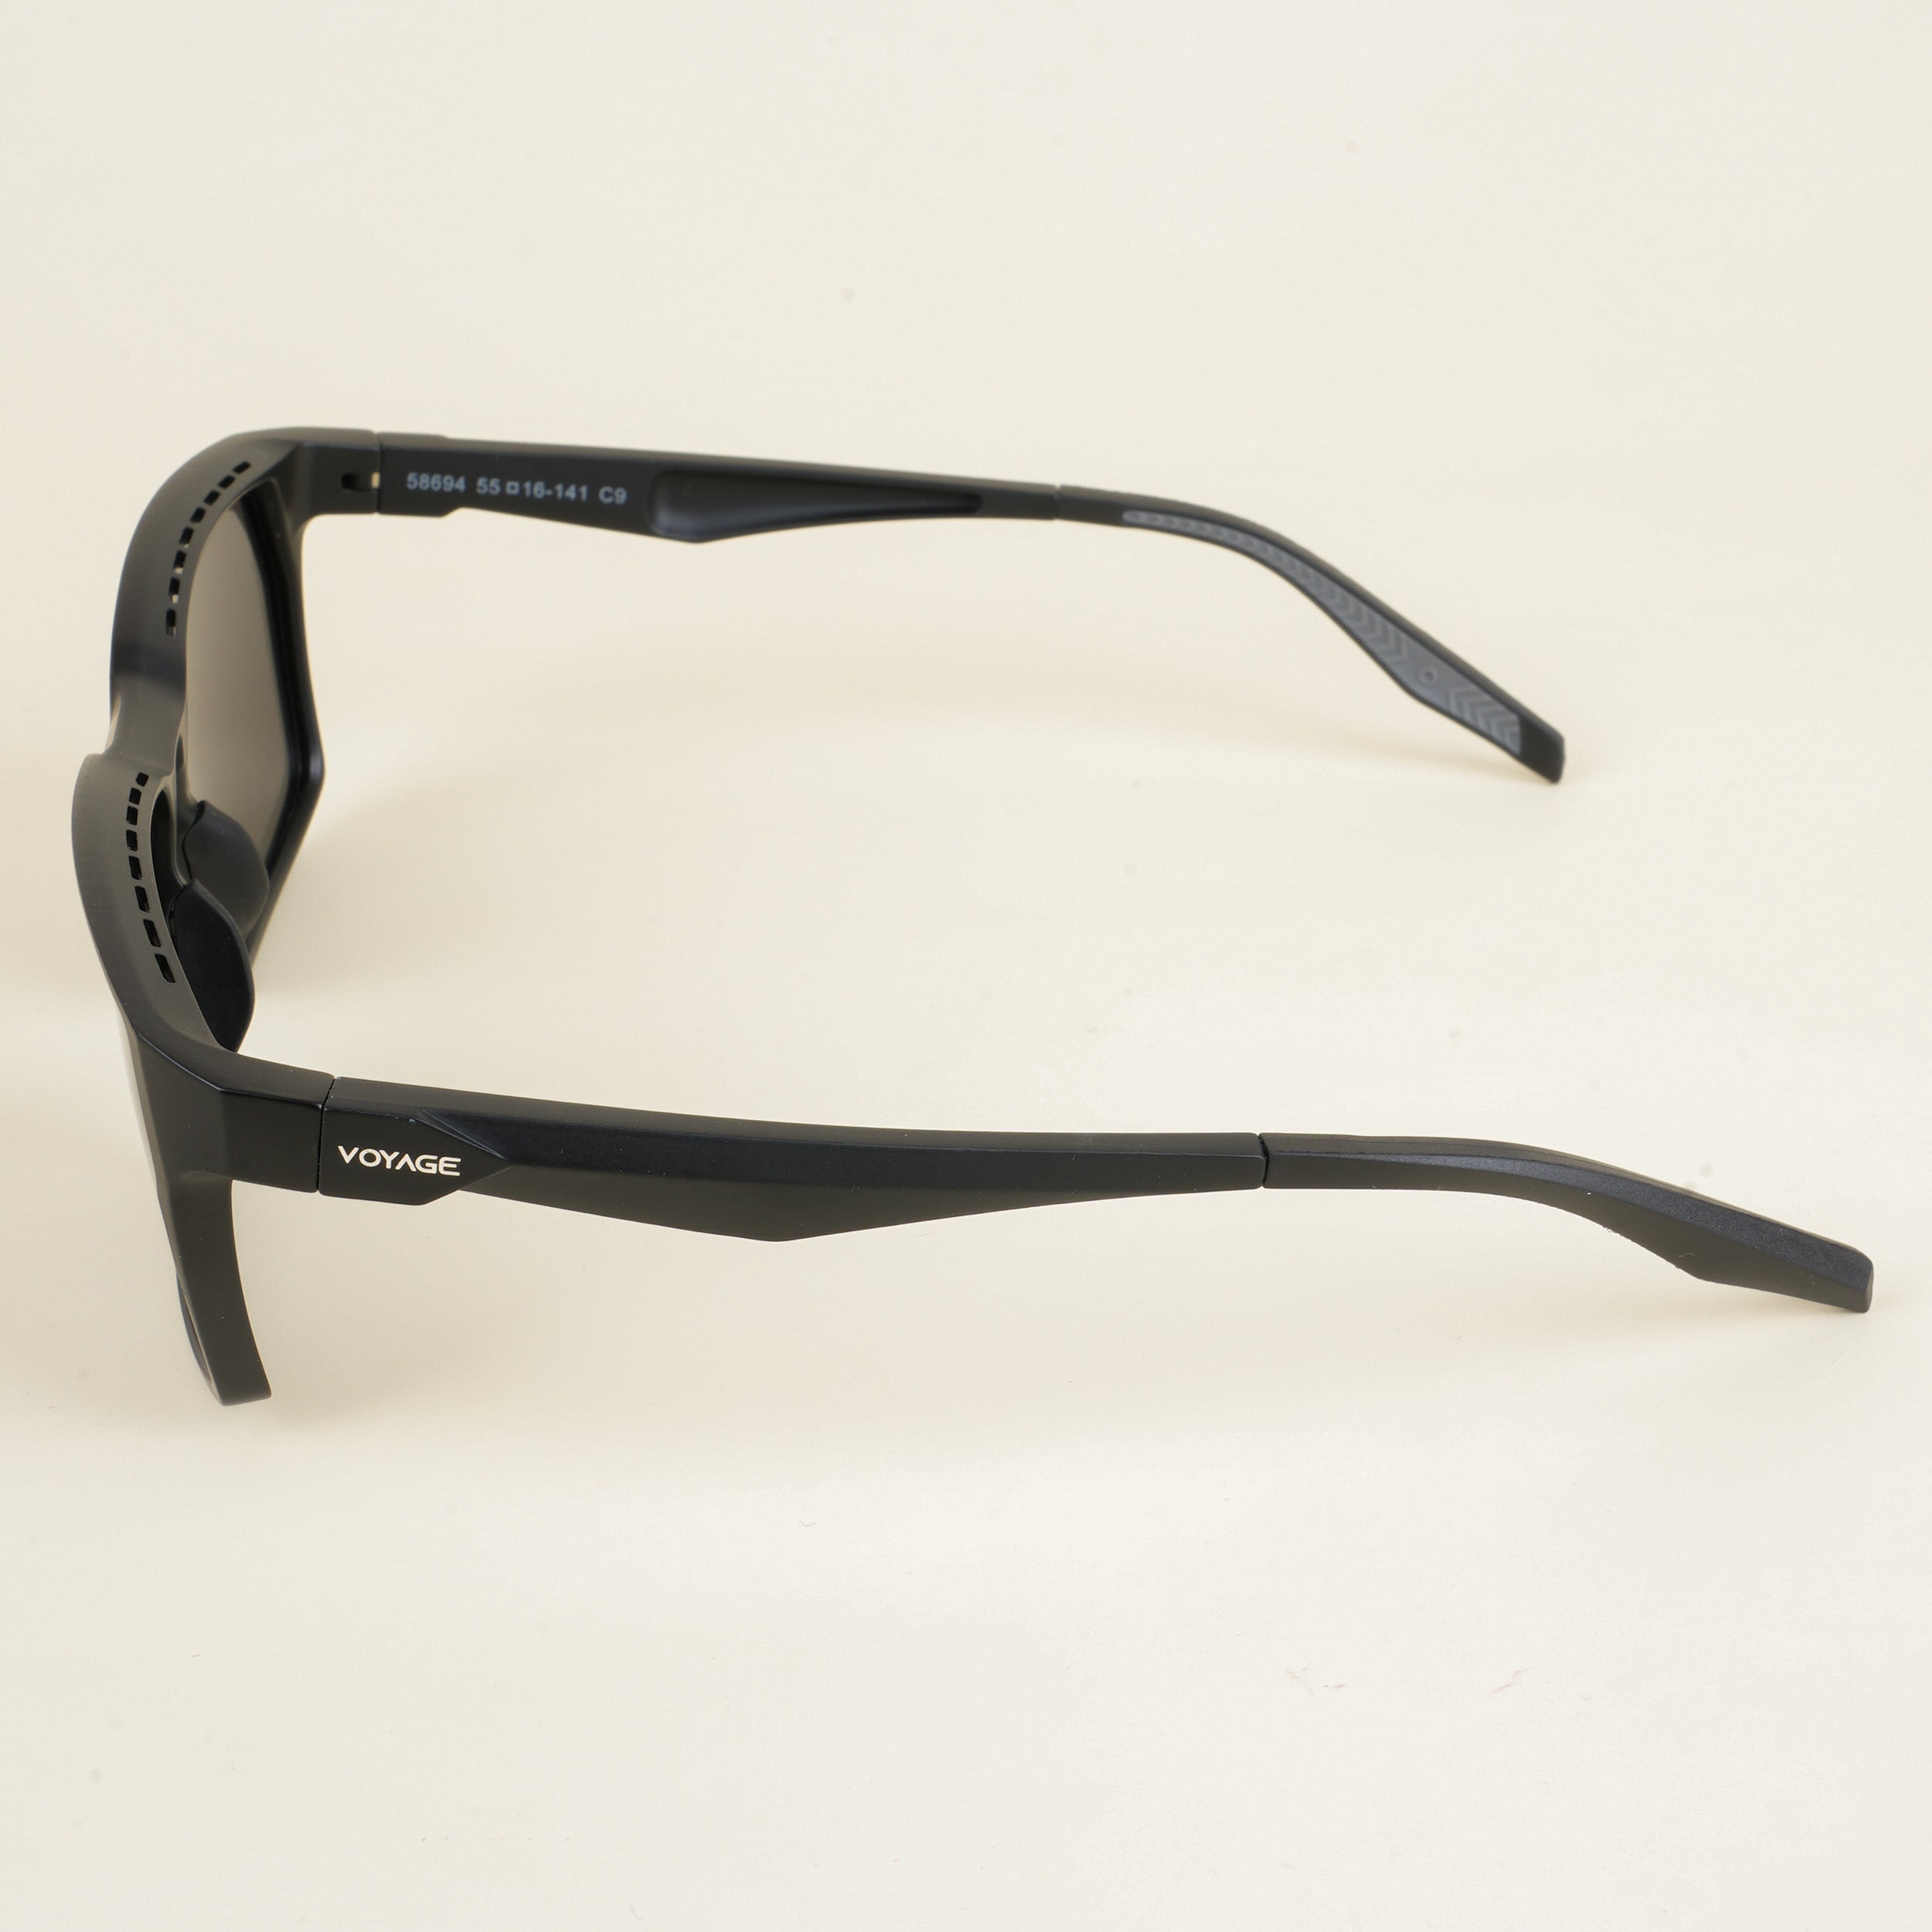 Voyage Wayfarer Polarized Sunglasses for Men & Women (Black Lens | Matt Black Frame - PMG5281)